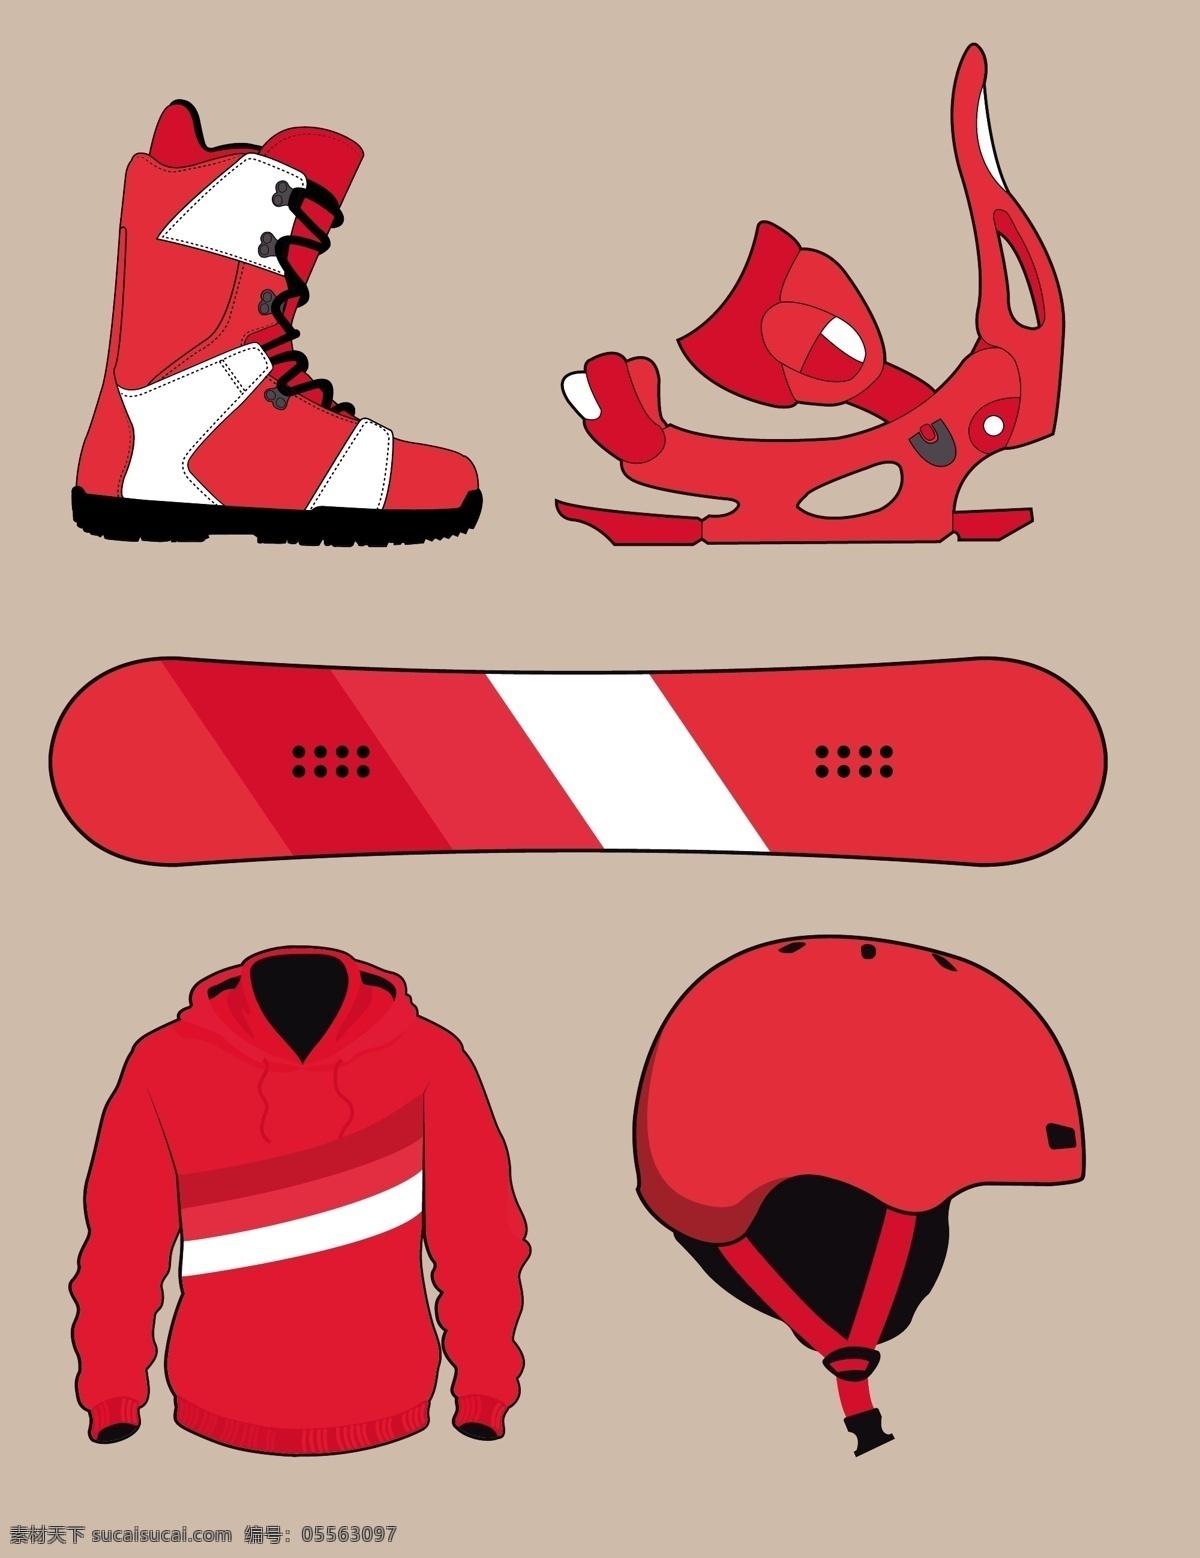 滑雪设备 运动 雪 冬天 板 头盔 滑雪板 靴子 设备 极端的 垂直的 休闲 滑雪 红色